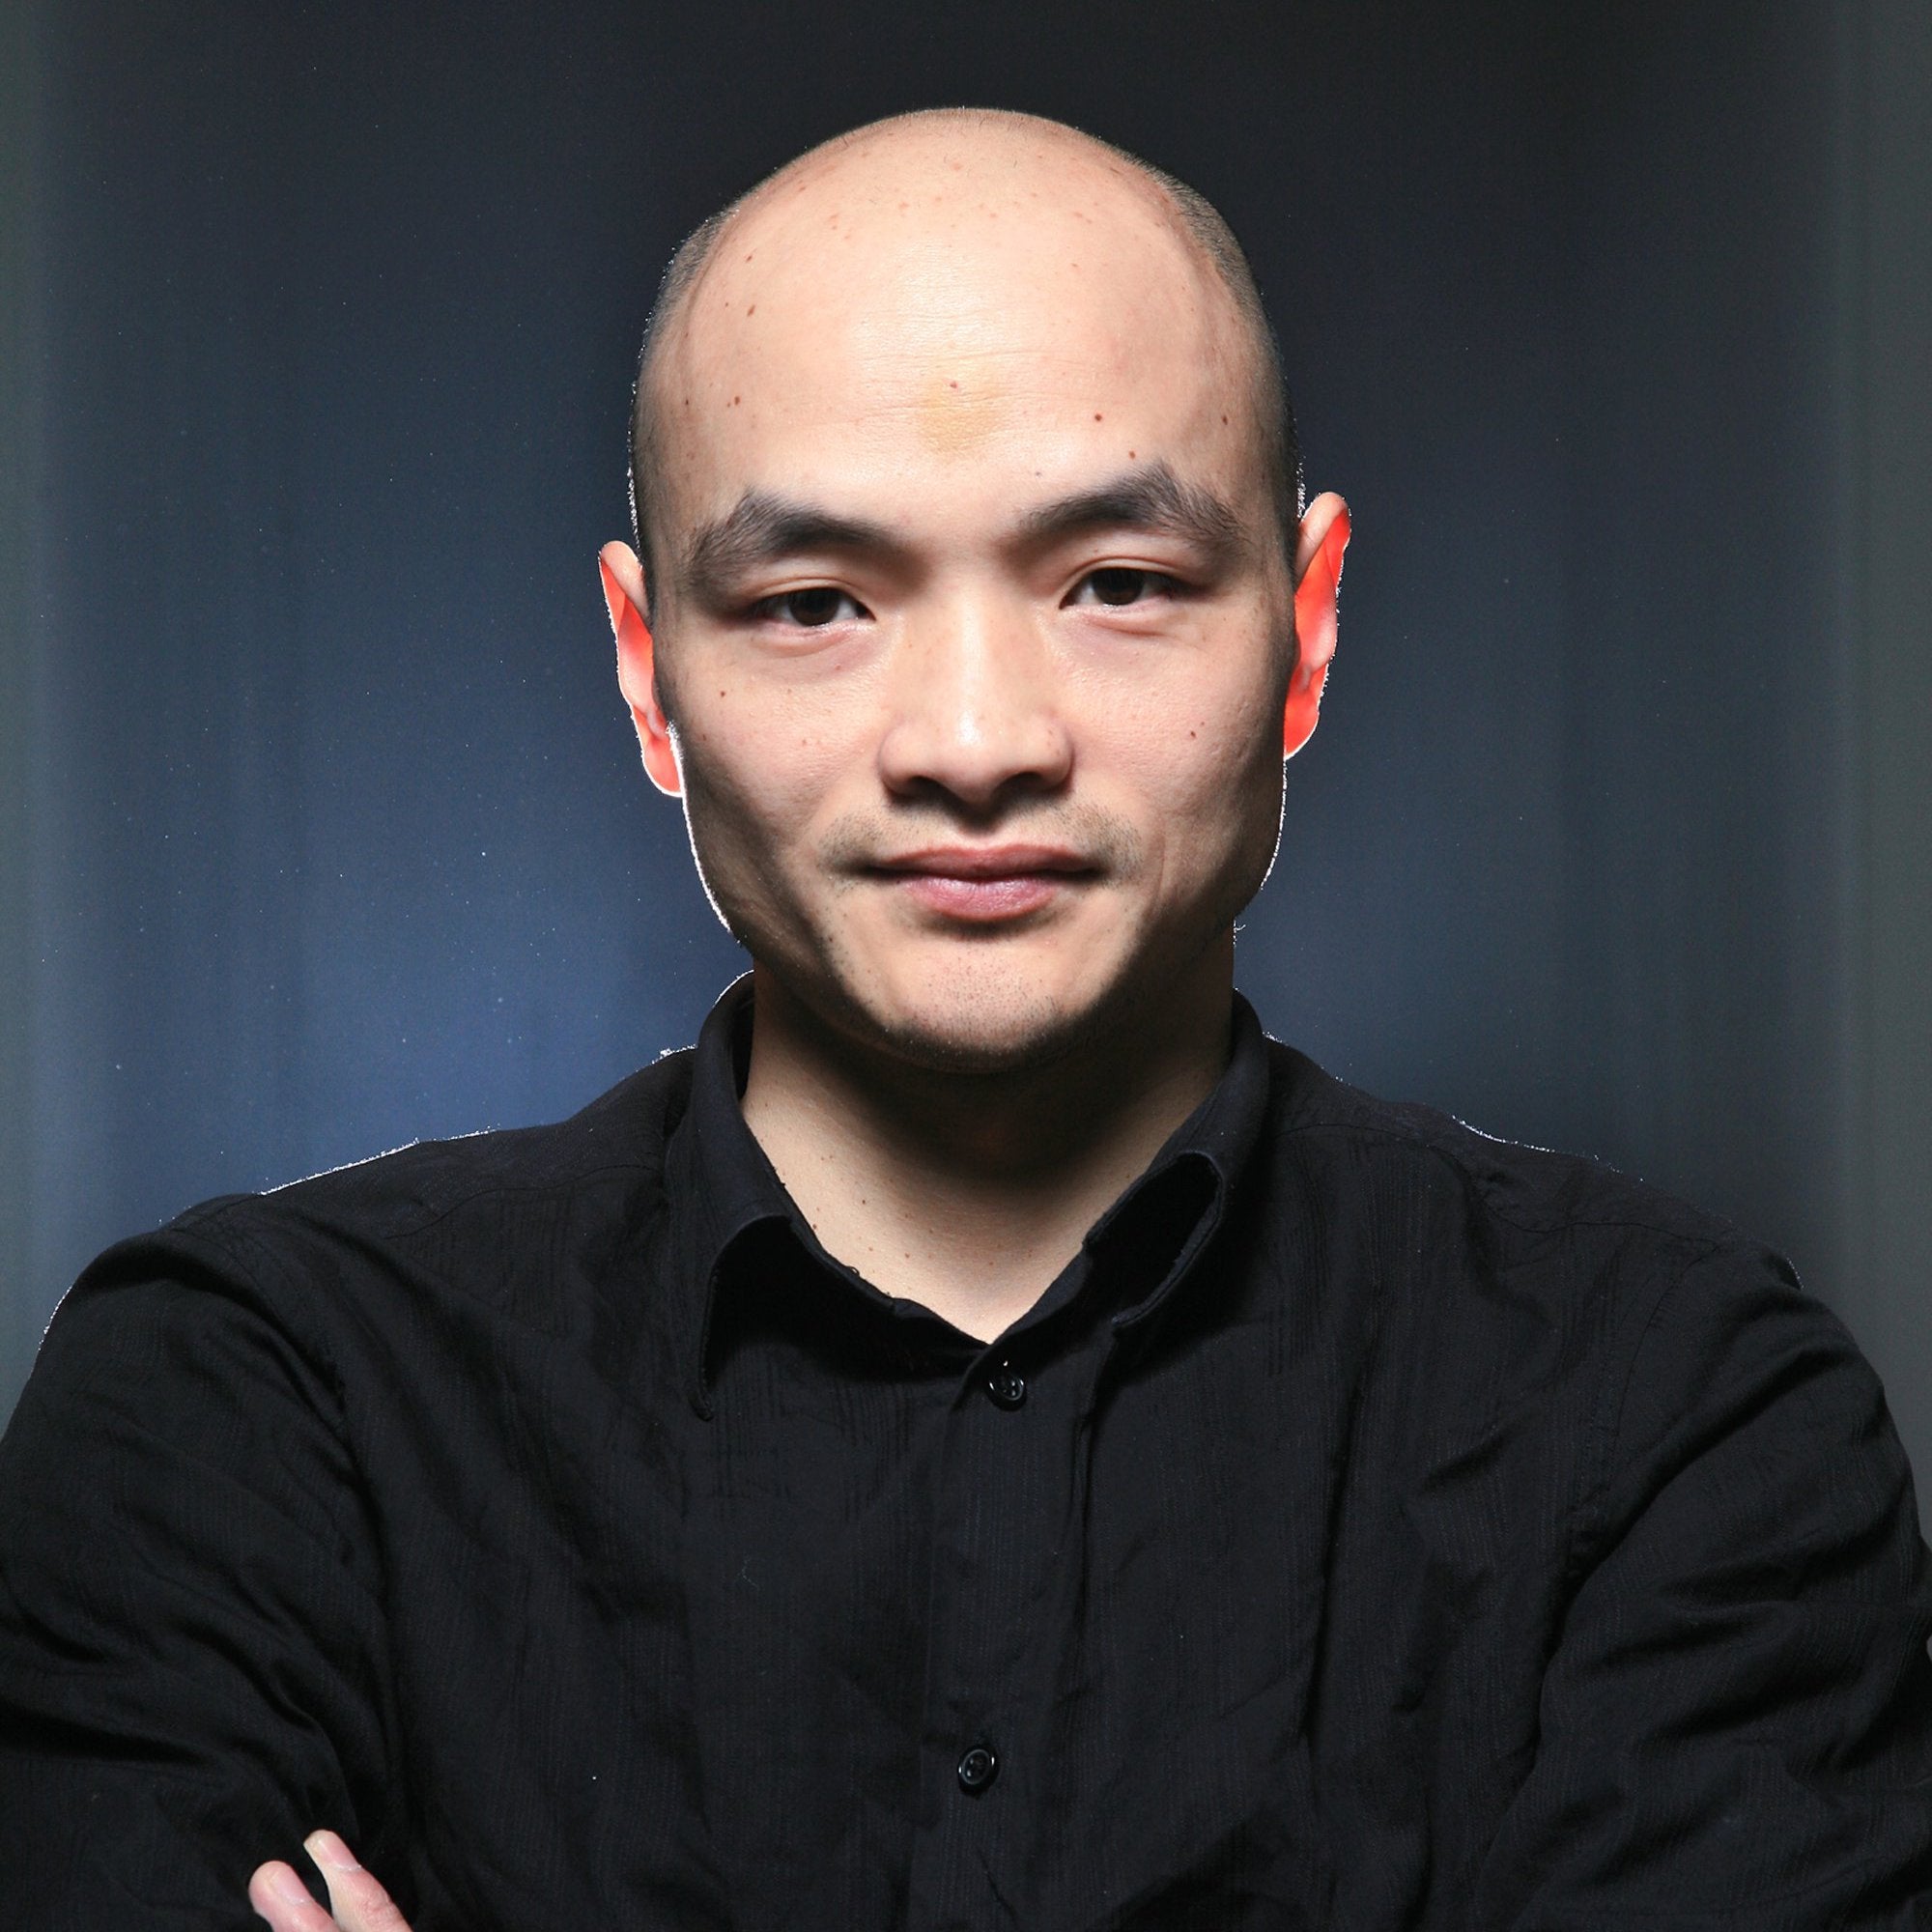 Wang Guangle